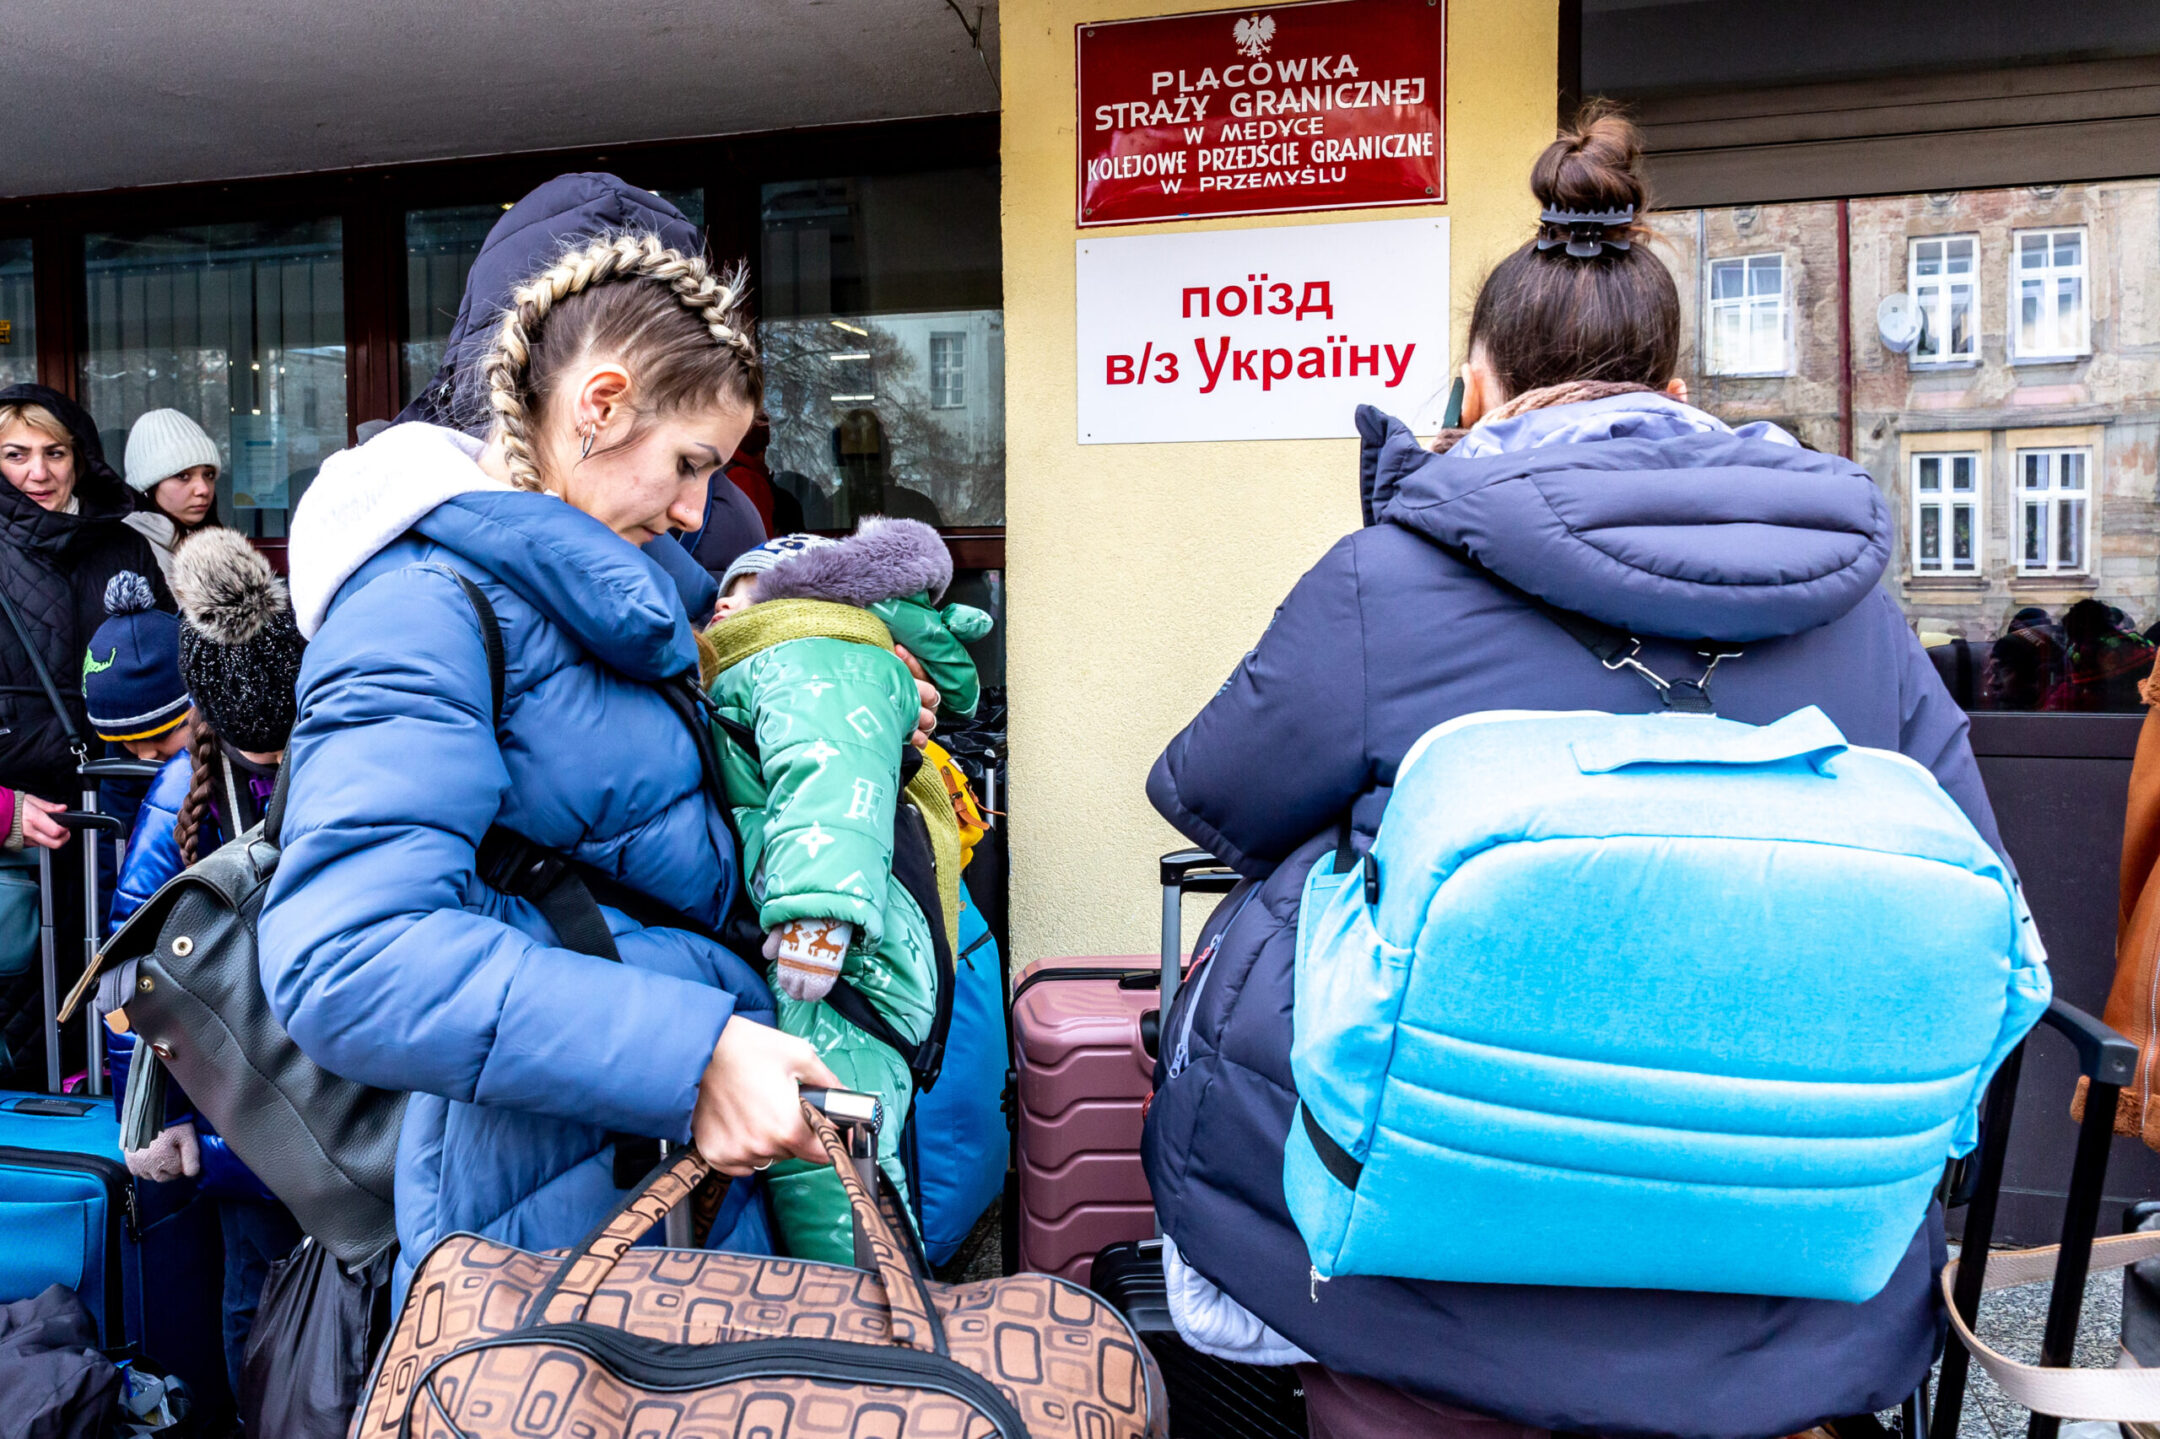 Ukrainians queue at the railway station in Przemysl, Poland, to depart for Ukraine, amid a reversal in migration patterns as the Ukraine war ground on, Dec. 20, 2022. (Dominika Zarzycka/NurPhoto via Getty Images)